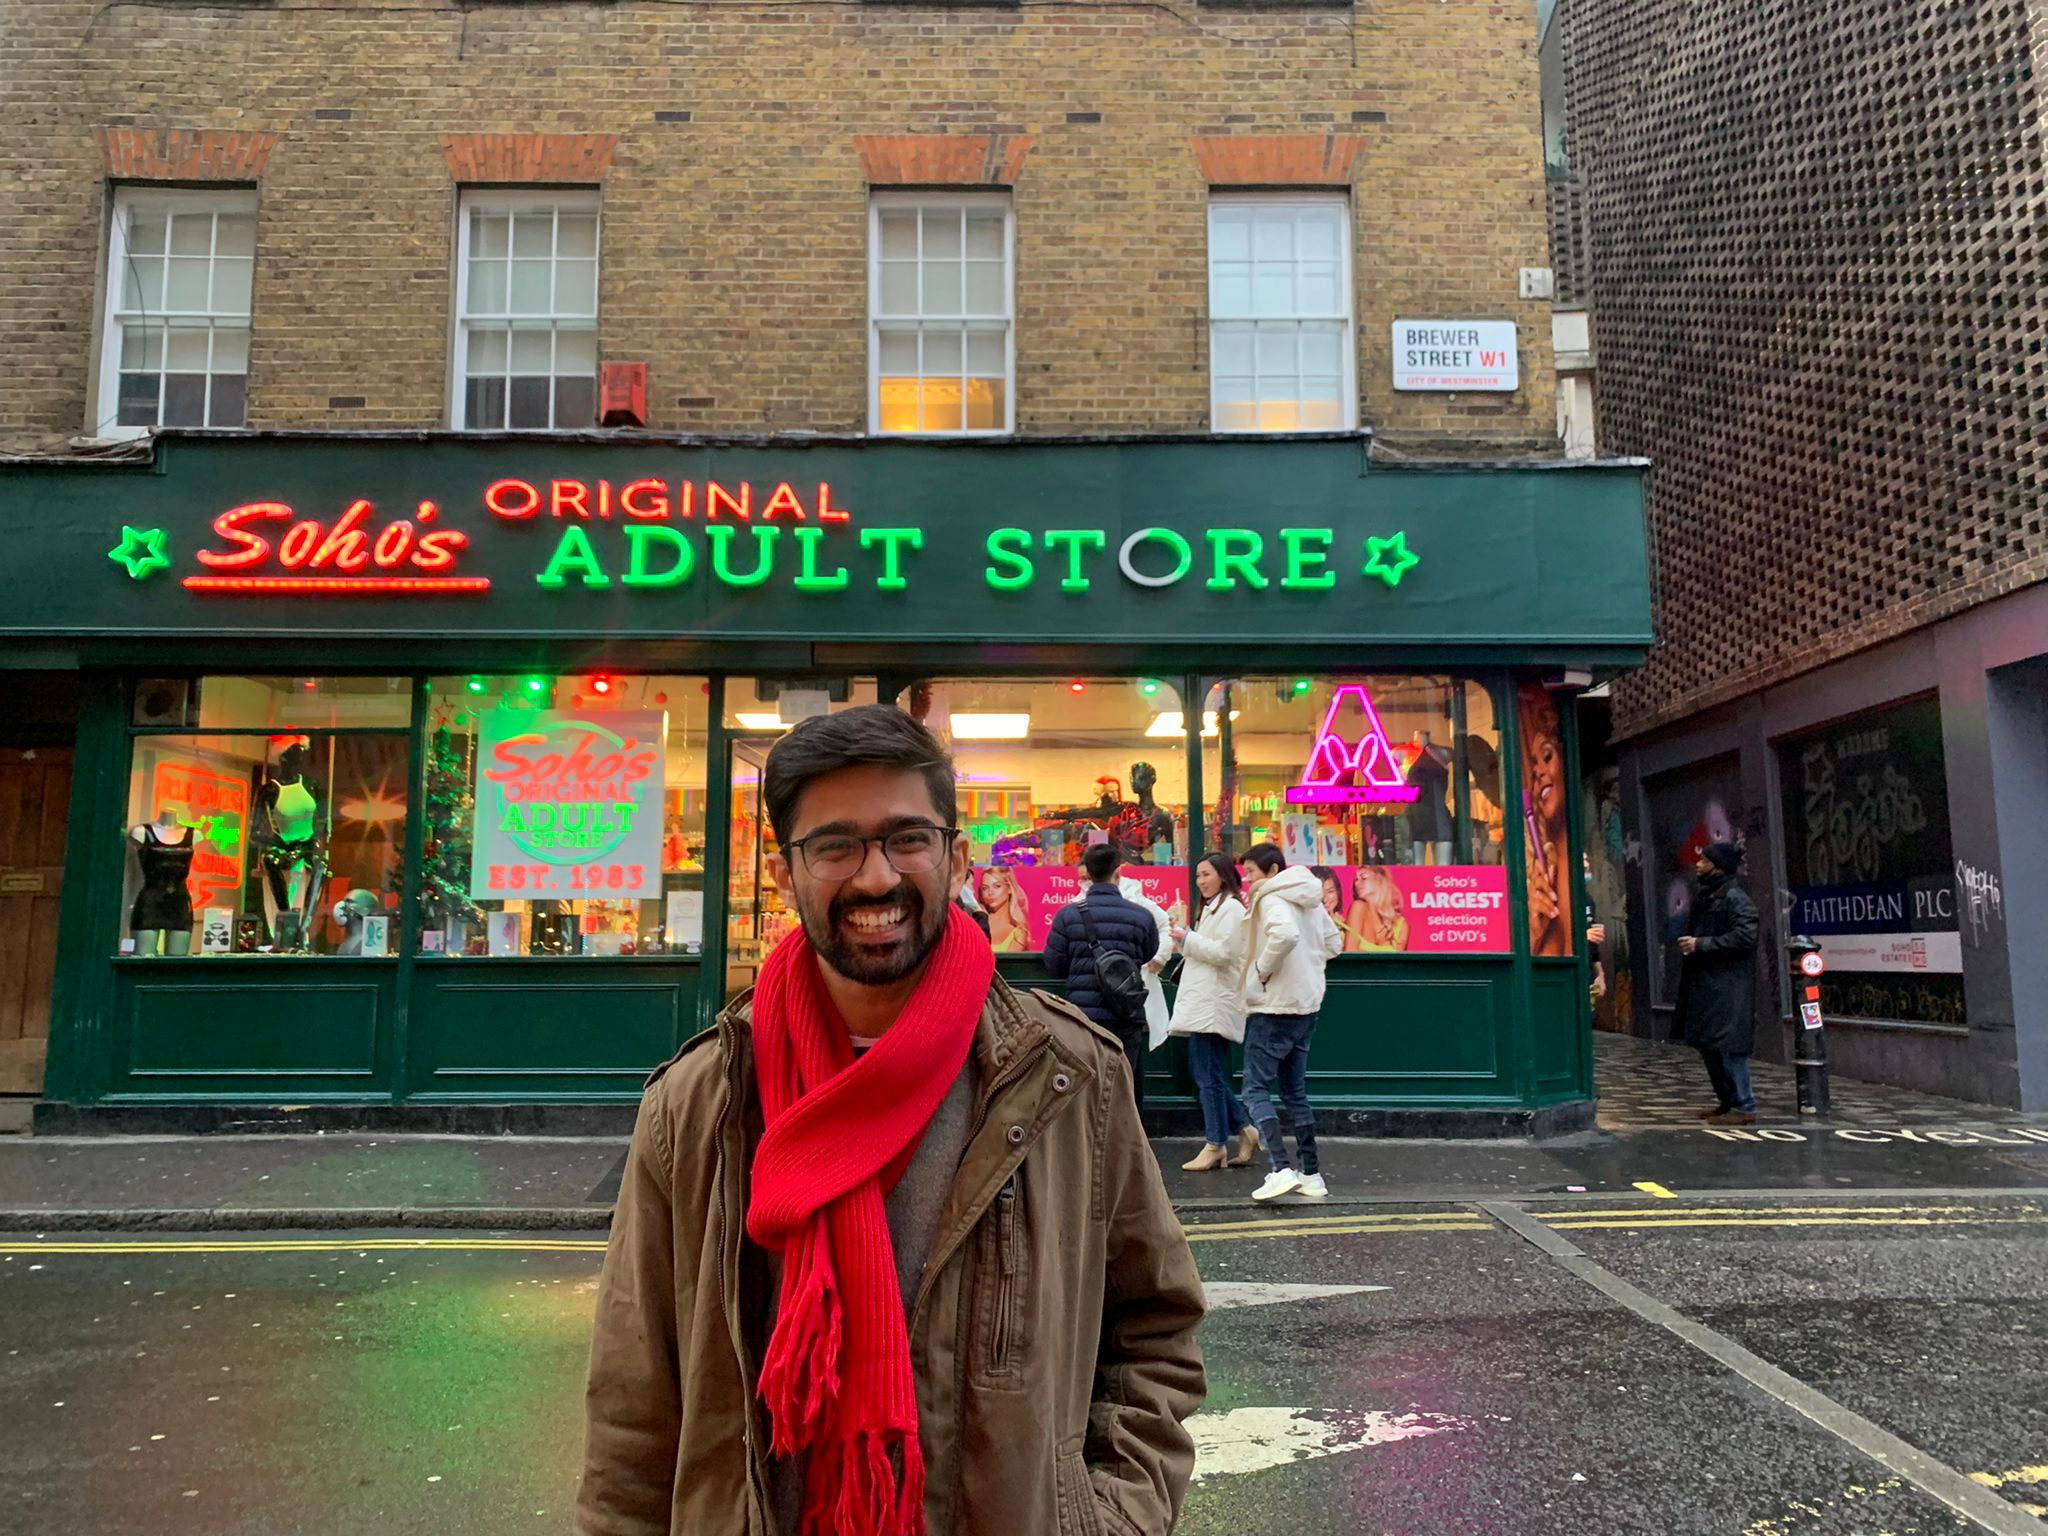 Co-founder Ritesh D Ritelin standing outside Soho’s Original Adult Store